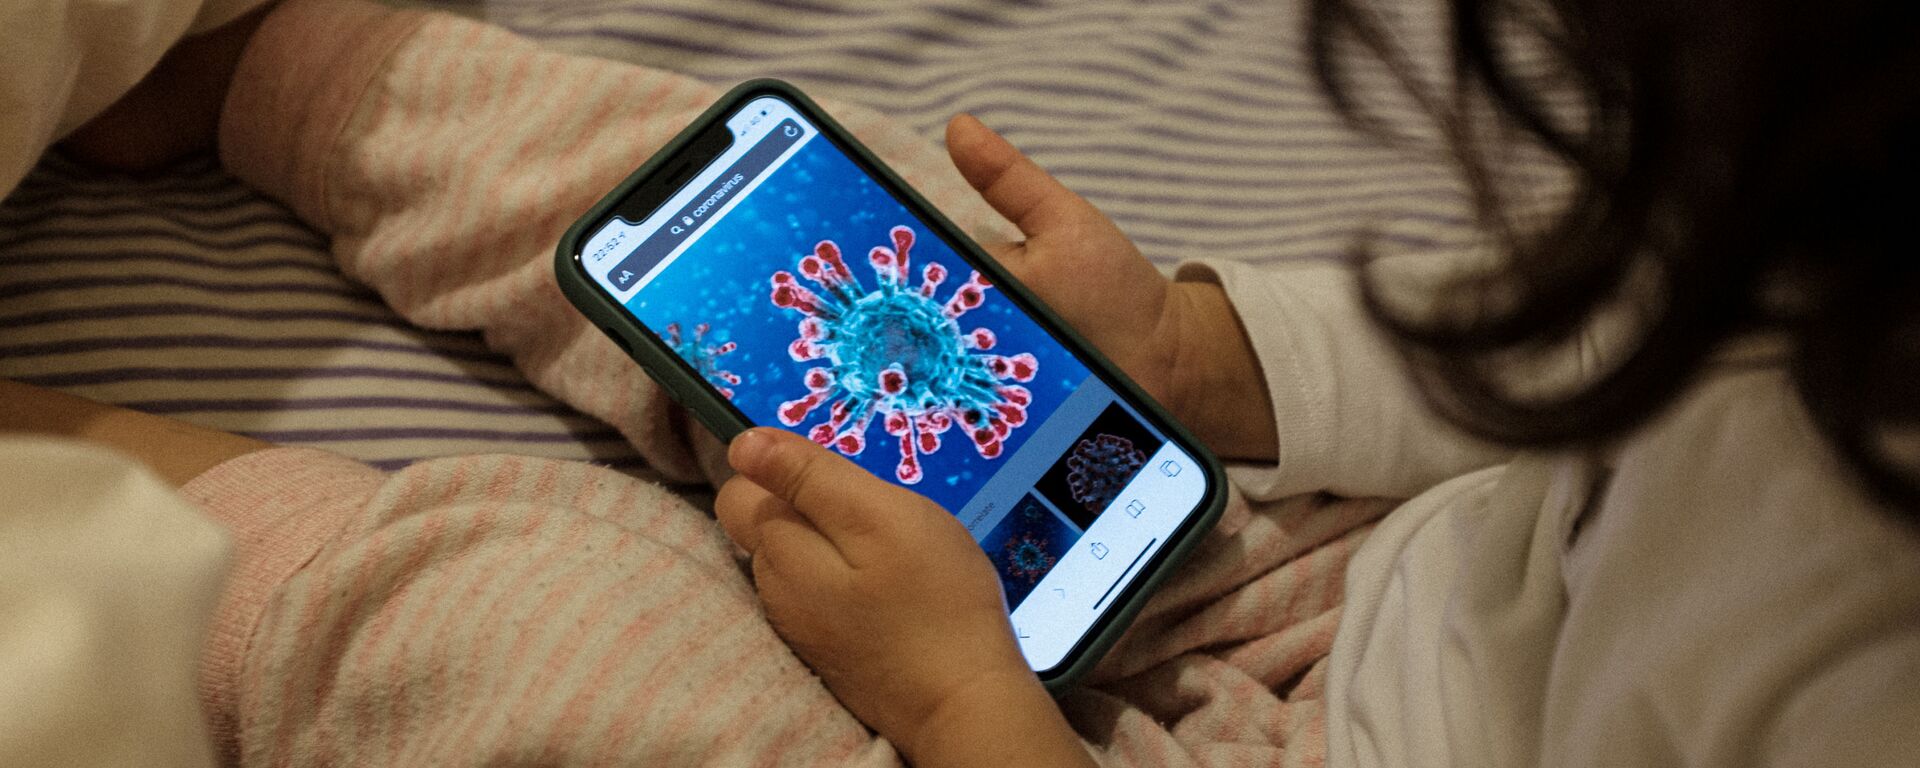 Маленькая девочка смотрит на иллюстрацию коронавируса на экране смартфона, Италия - Sputnik Таджикистан, 1920, 24.02.2021